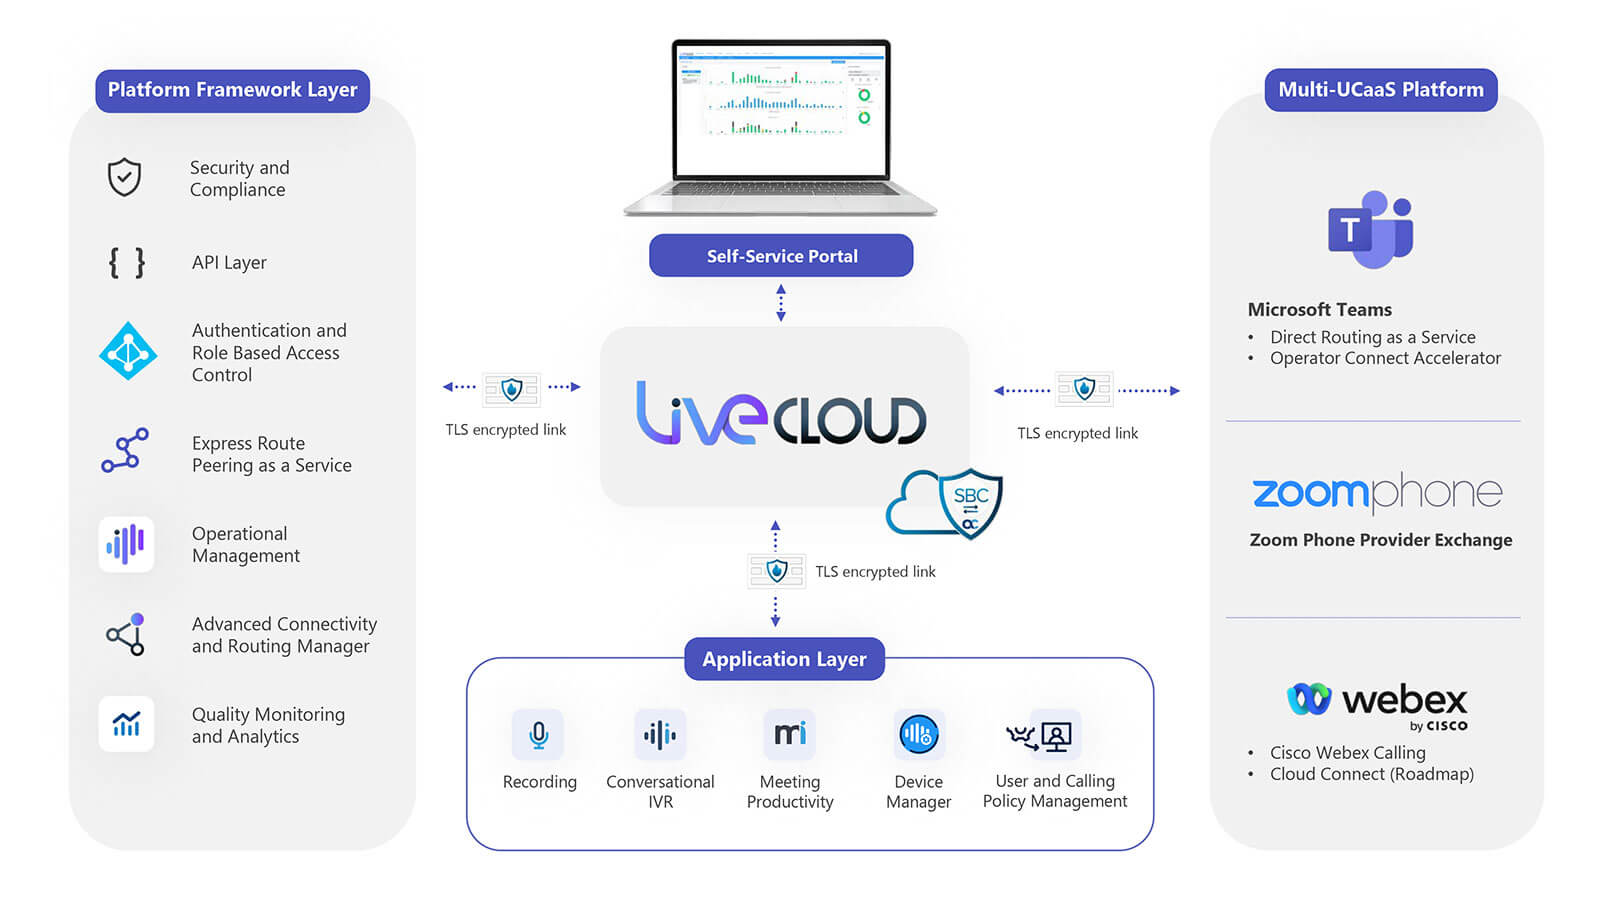 Solución AudioCodes Live Cloud – Arquitectura y Diseño